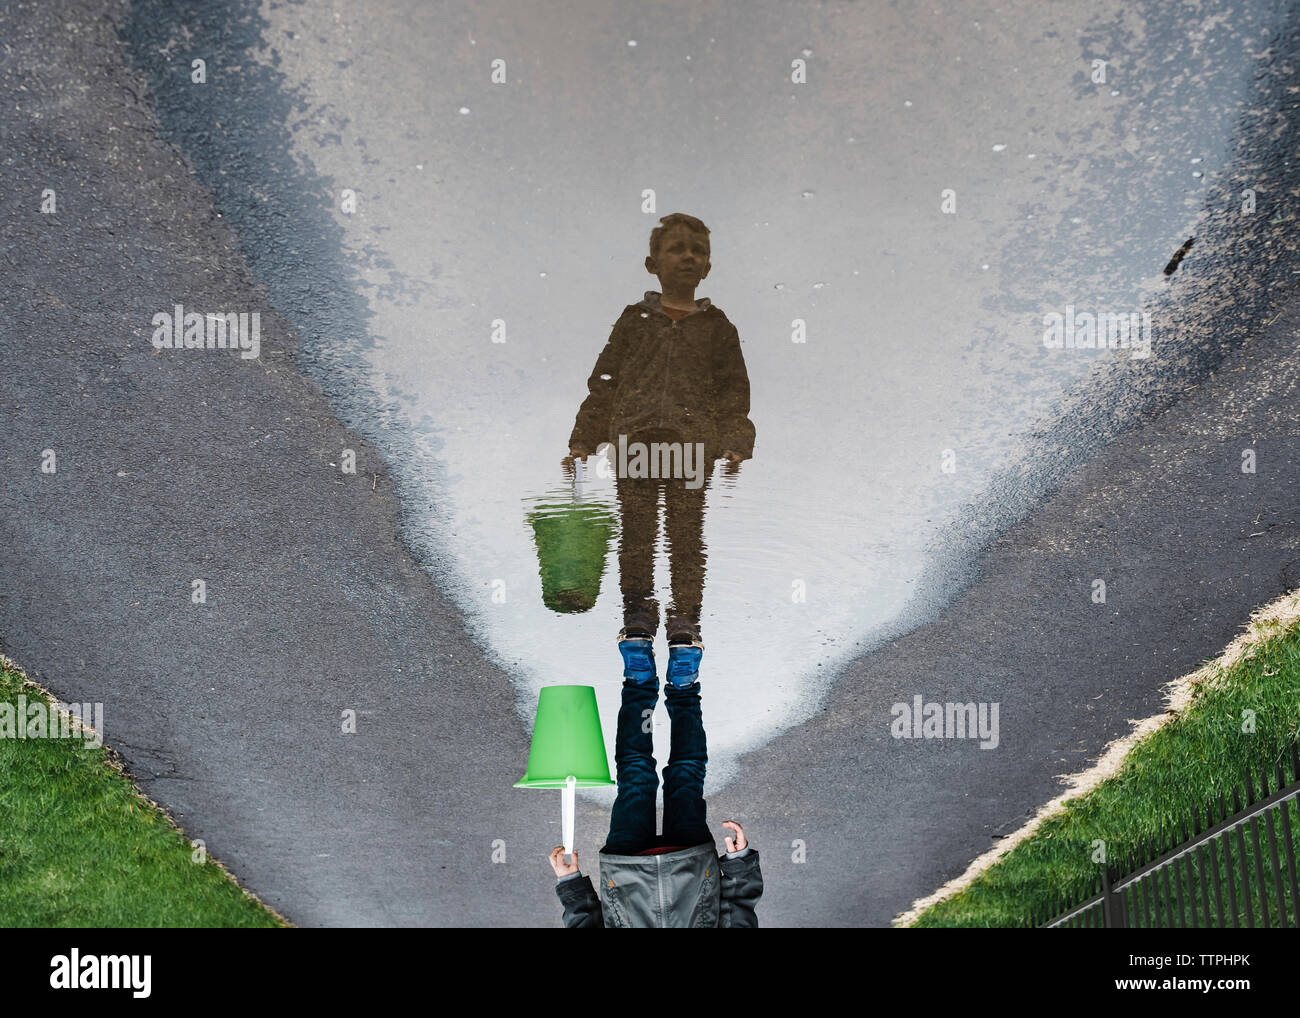 L'envers de l'image garçon debout sur route mouillée en transportant le godet Banque D'Images